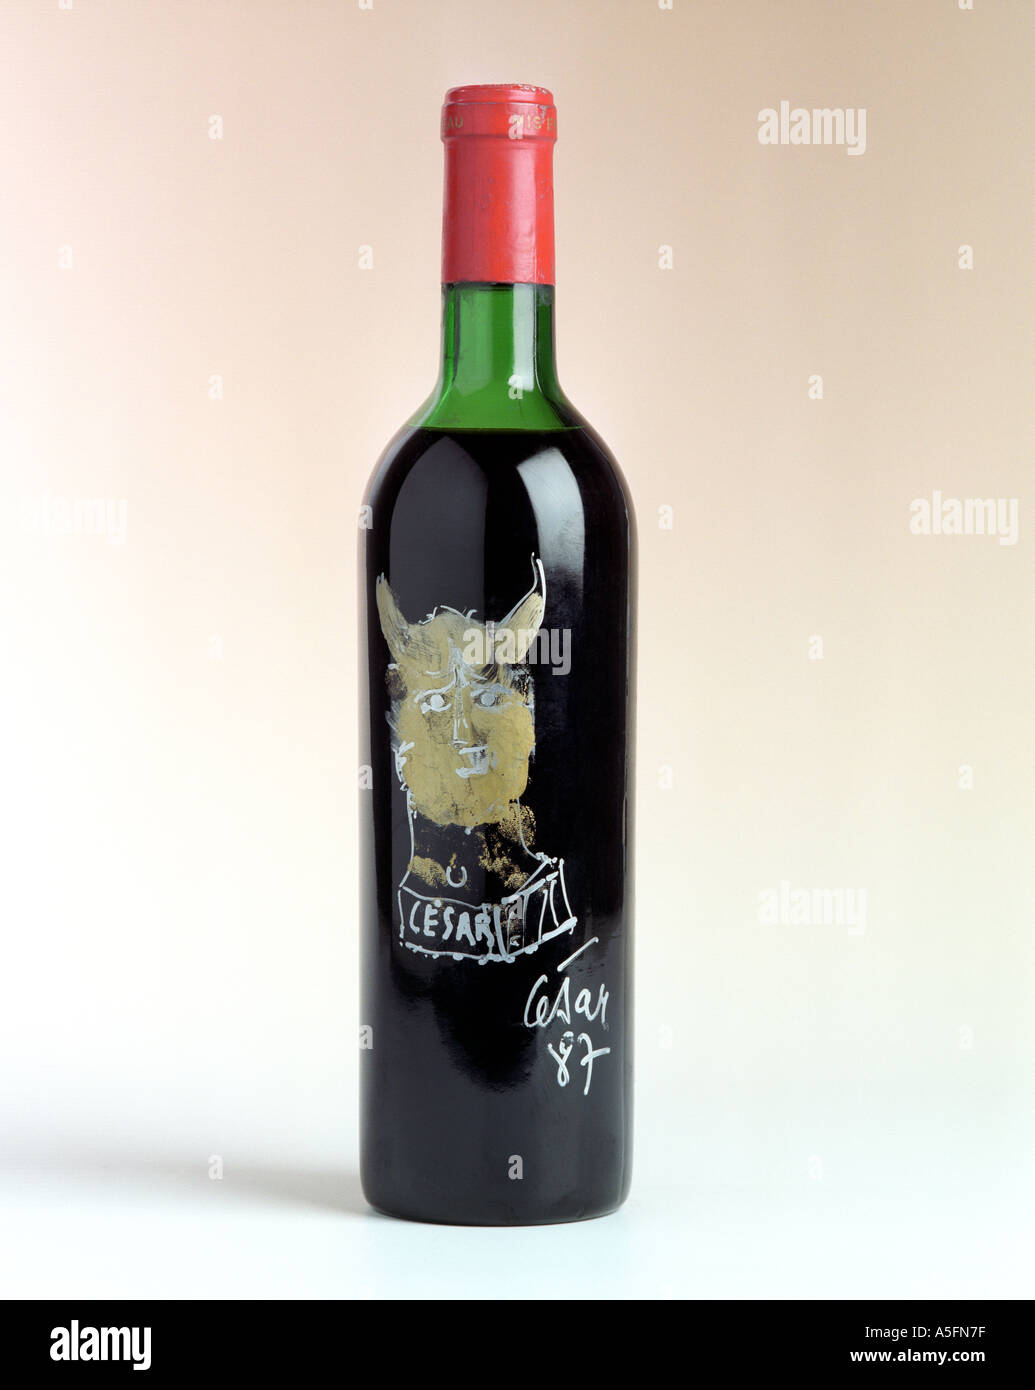 Un rare bouteille de Château Mouton Rothschild 1967 vin rouge avec l'étiquette conçue et signée par l'artiste César Baldaccini Banque D'Images